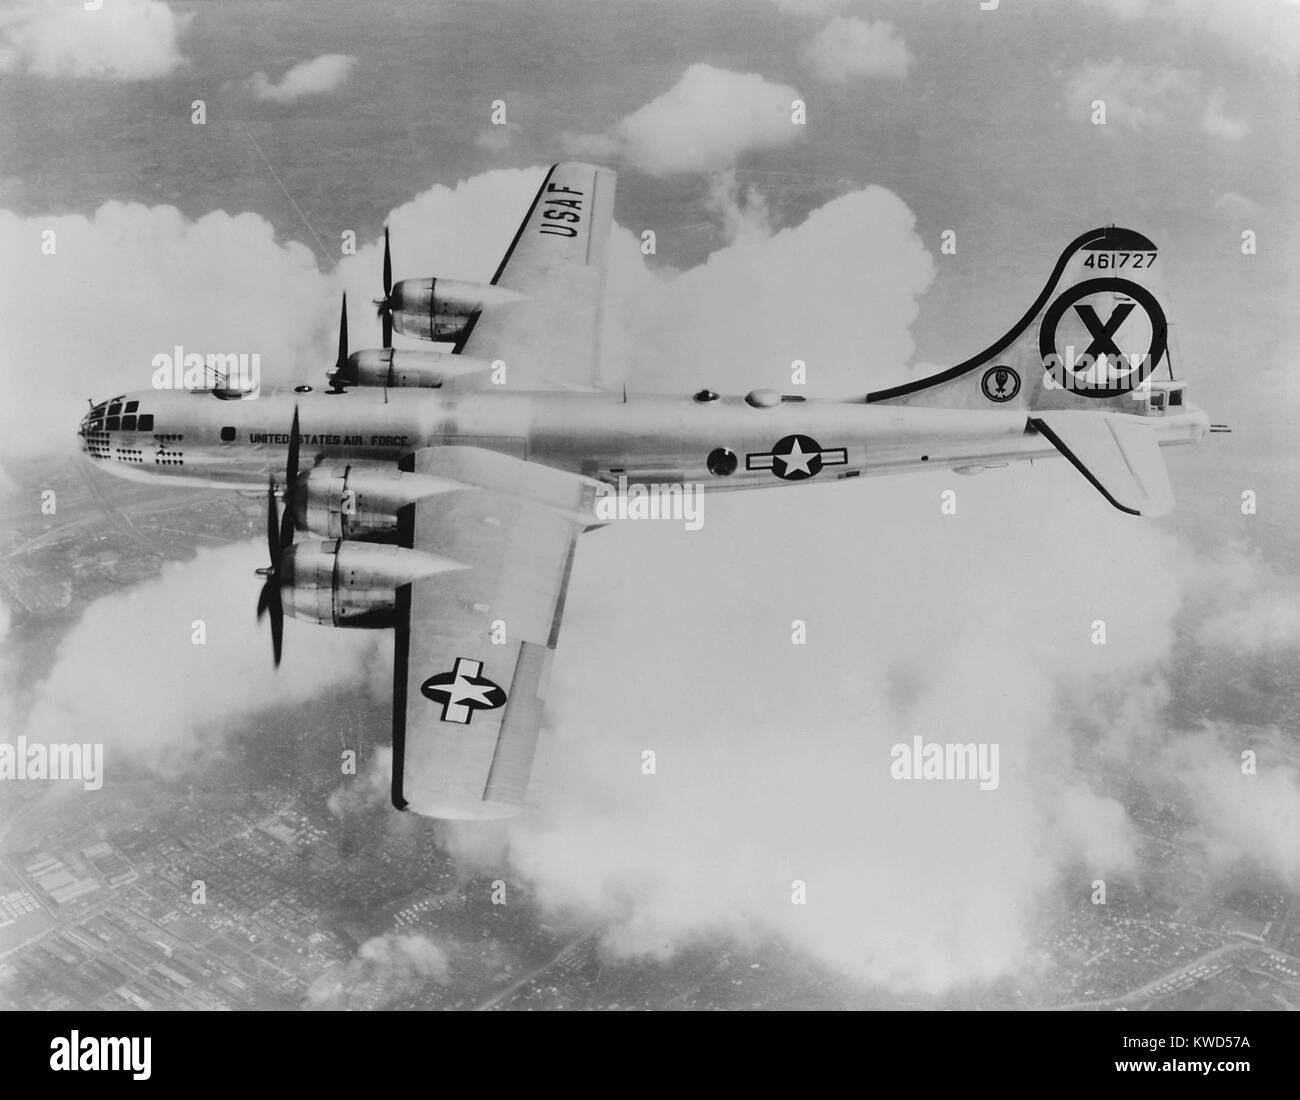 RB-29 du 31e Escadron de reconnaissance, quelque part au-dessus de la Corée. La version de reconnaissance le Superfortress bomber effectuées cible et l'évaluation des dommages-bombe la photographie. Ils ont aussi fait de reconnaissance électronique du radar au sol de l'ennemi. La lumière du jour leurs missions étaient dangereux car ils étaient vulnérables les avions de chasse MiG. Guerre de Corée, 1950-1953. (BSLOC   2014 11 219) Banque D'Images